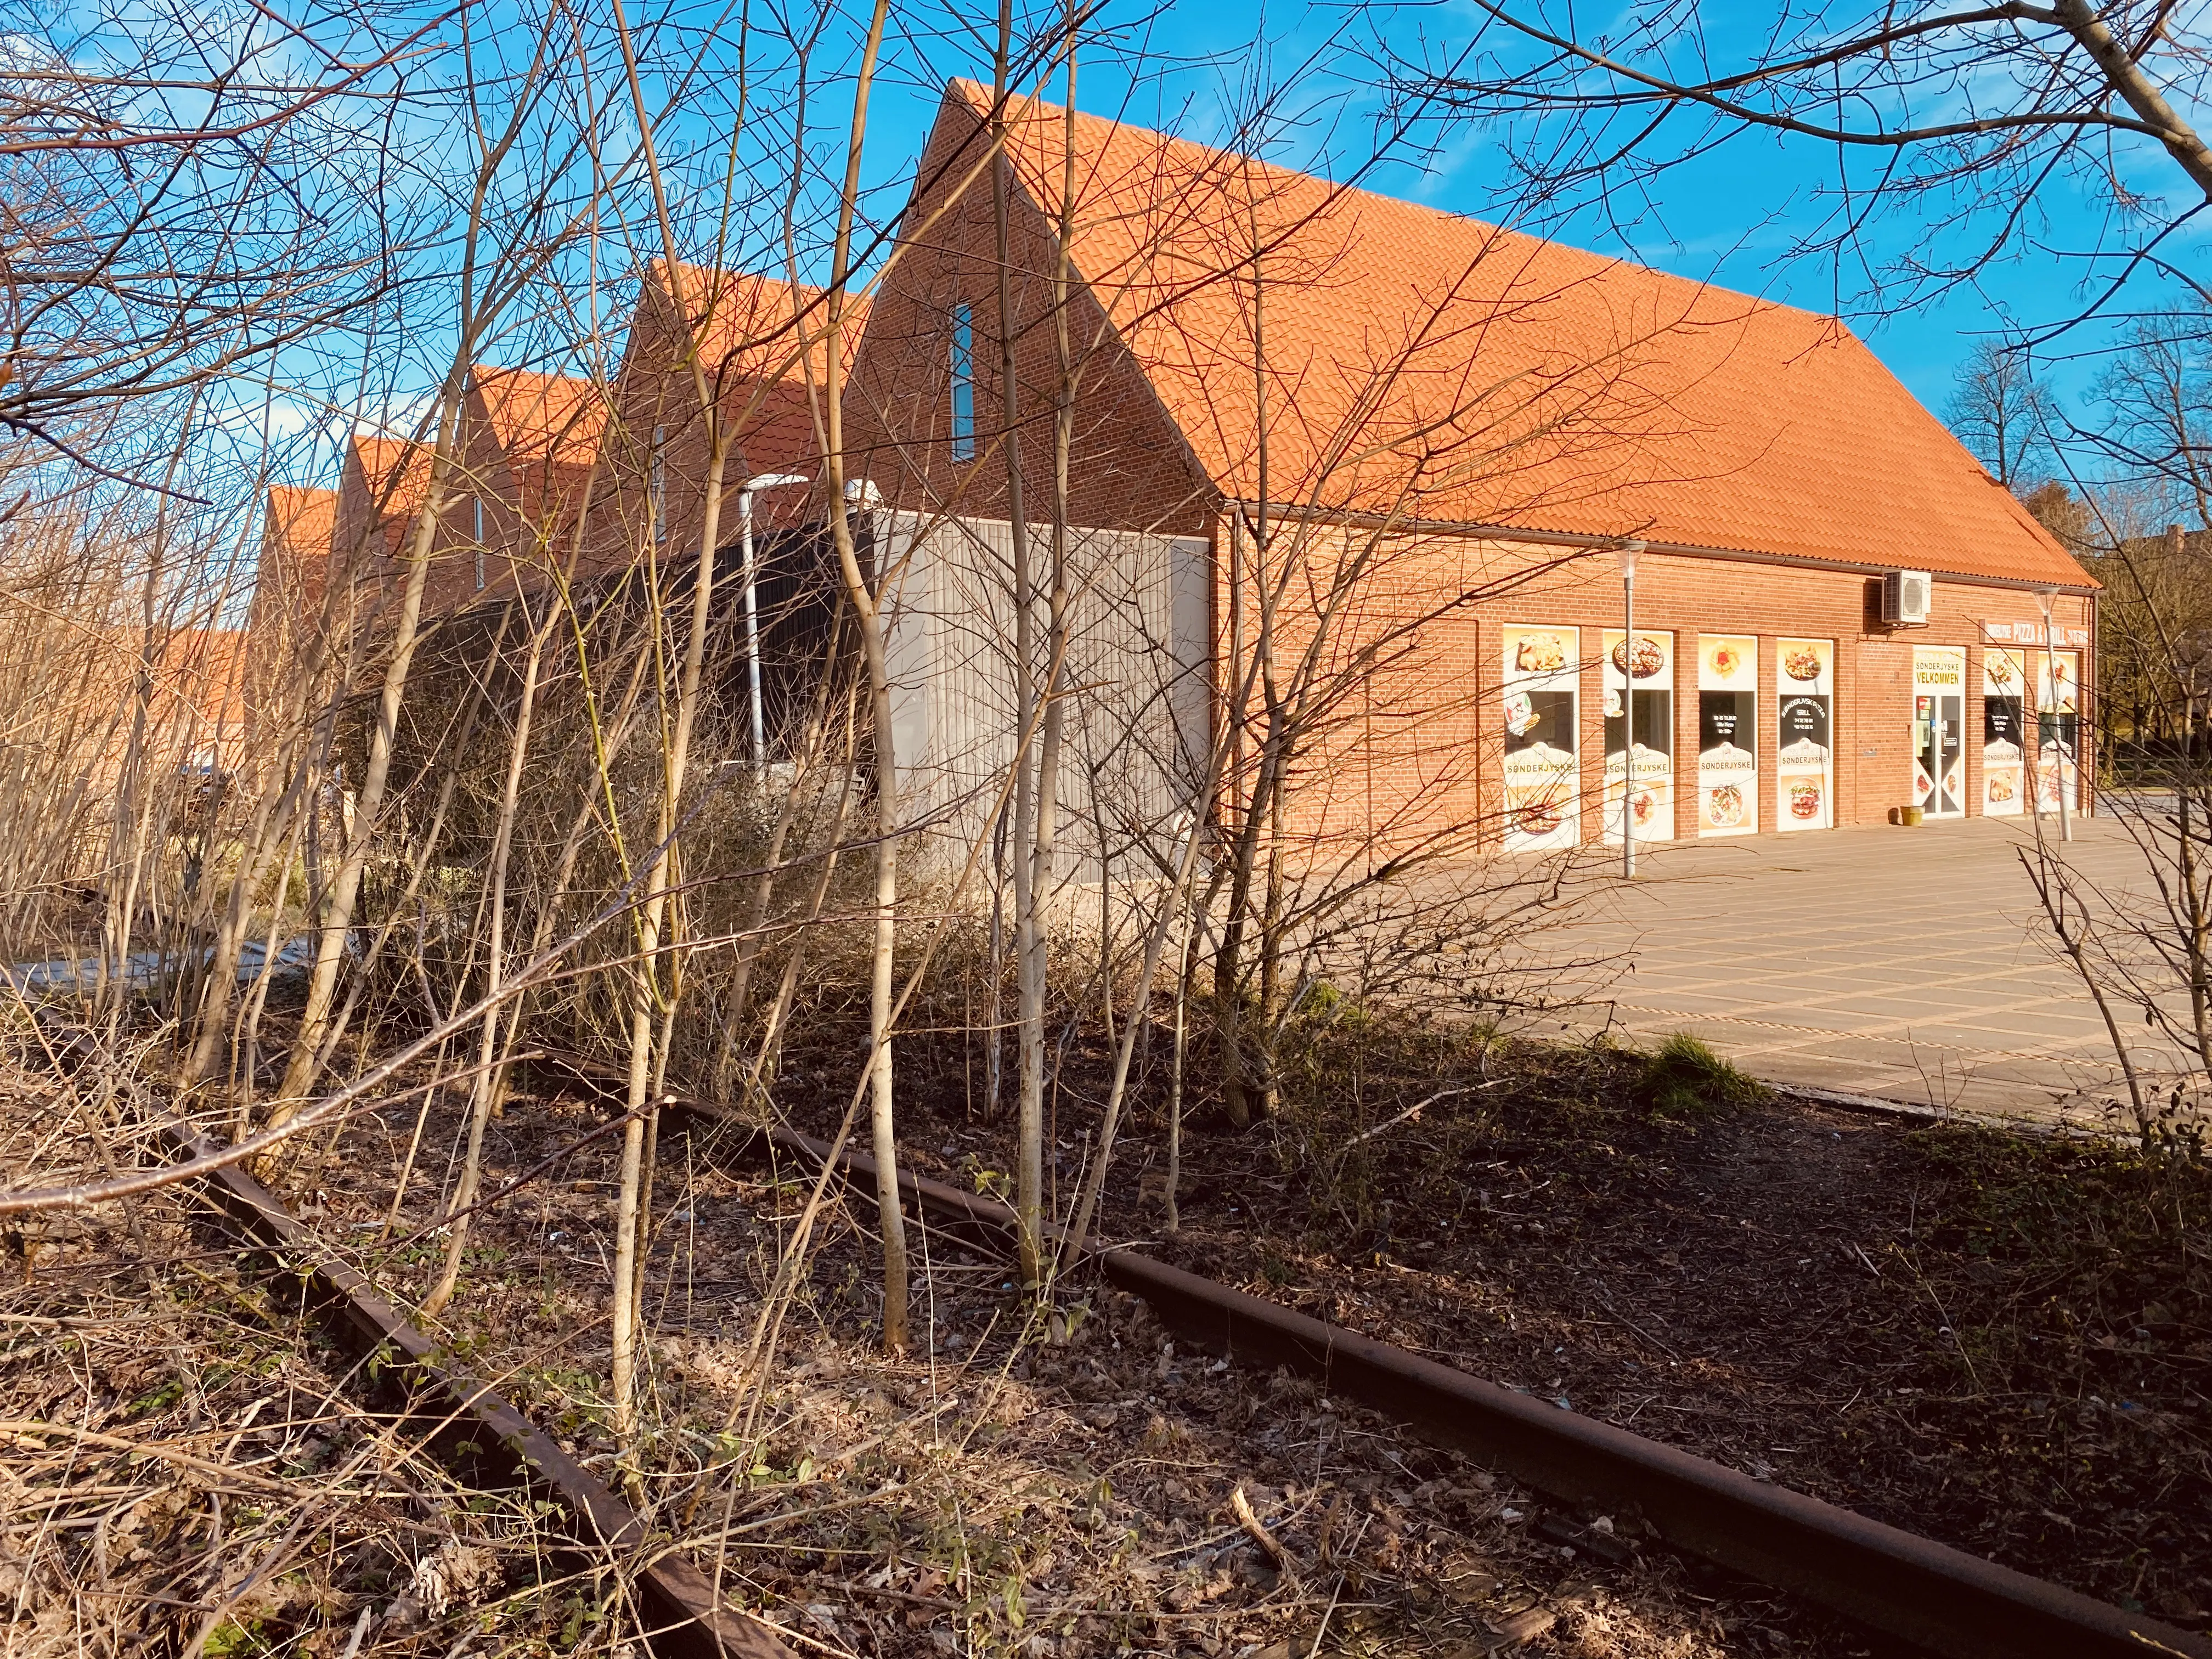 Billede af Tønder Øst Station, som¨ er nedrevet og har ligget her hvor Fakta ligger i dag.